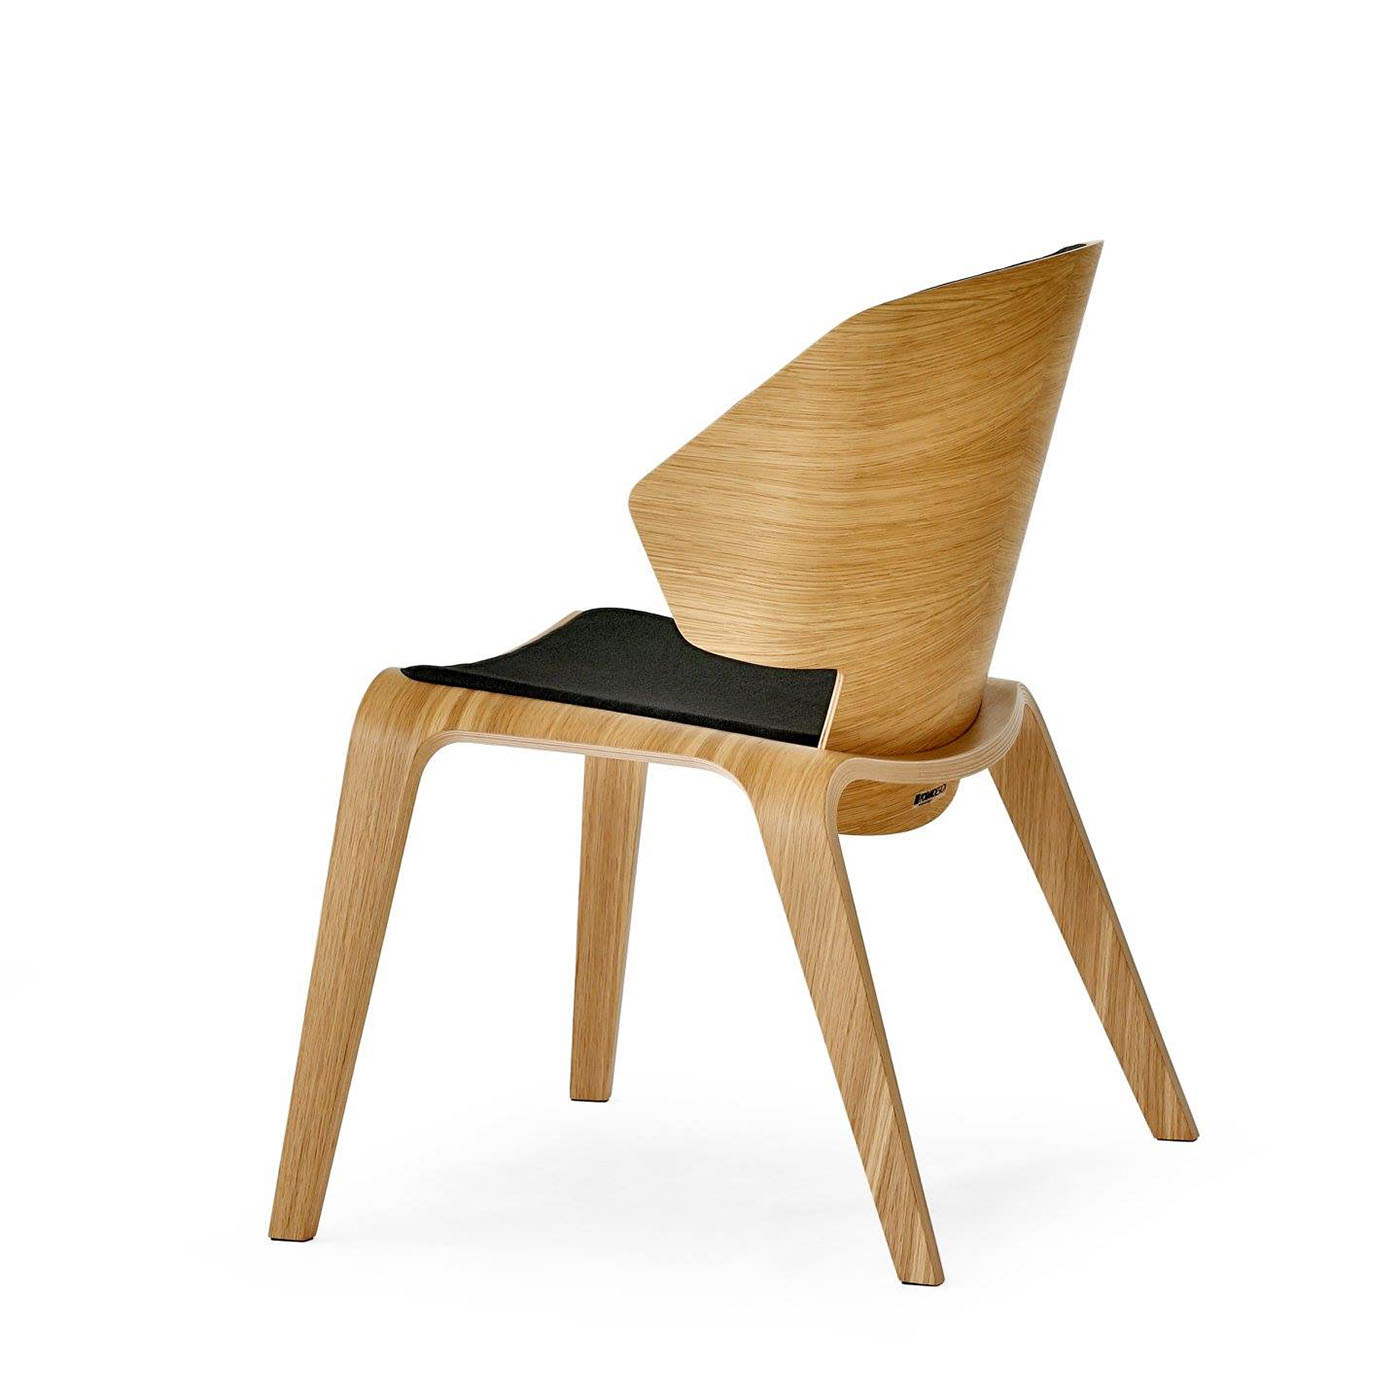 Ethore plywood wood chair plywood chair wood chair armchair